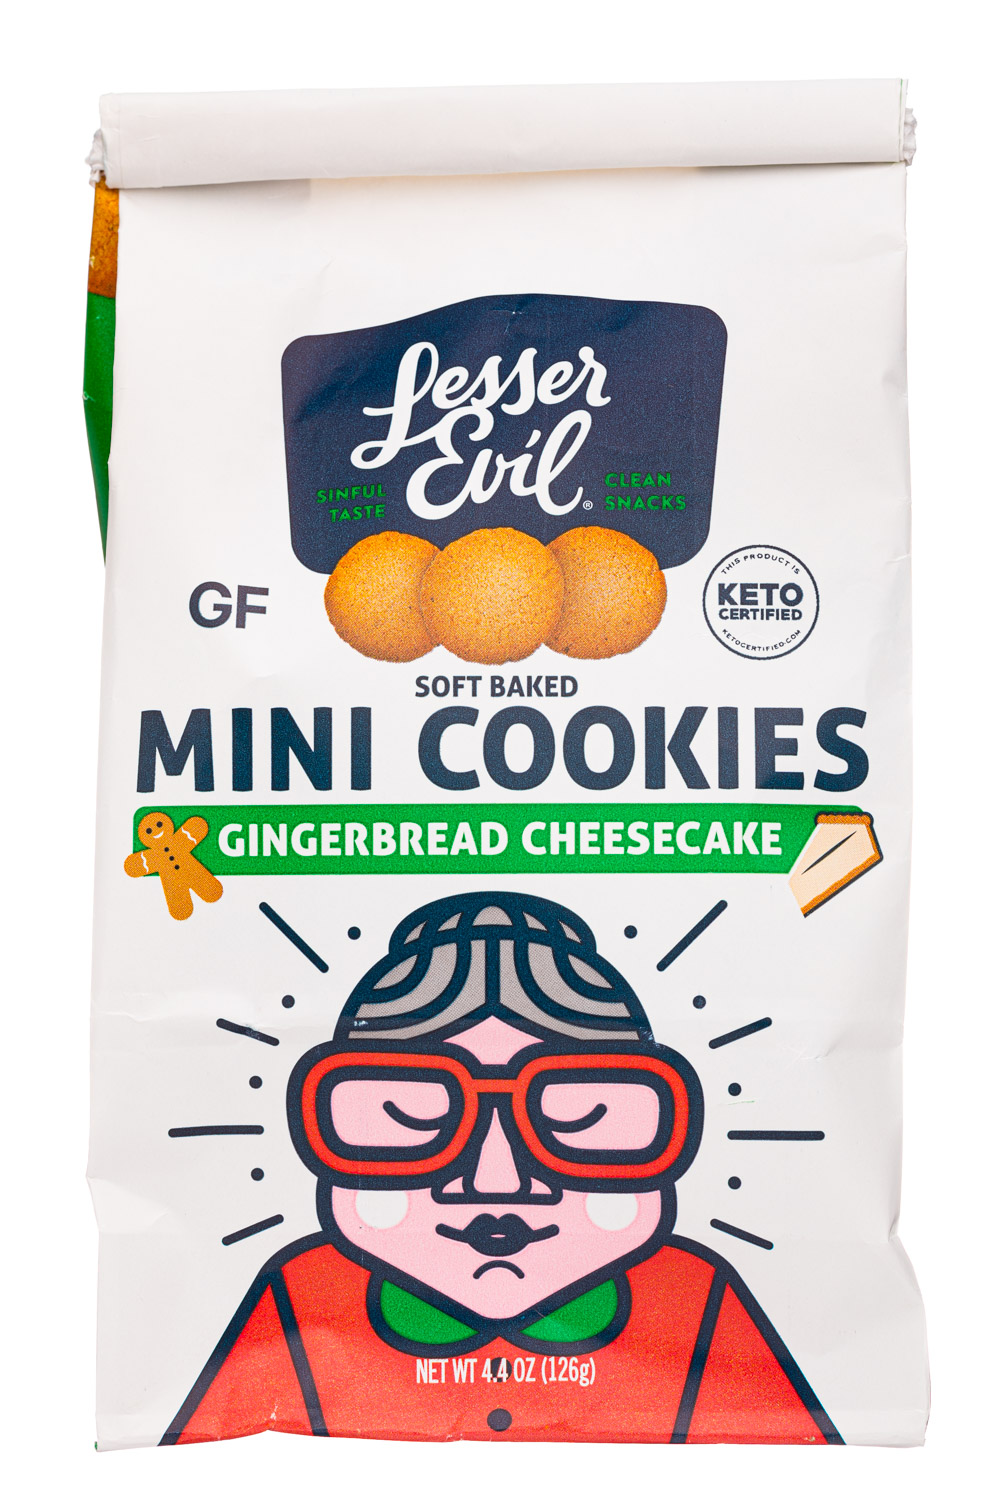 https://images.nosh.com/brands/879787769.lesserevil-4oz-2020-minicookies-gingerbreadcookies.jpg